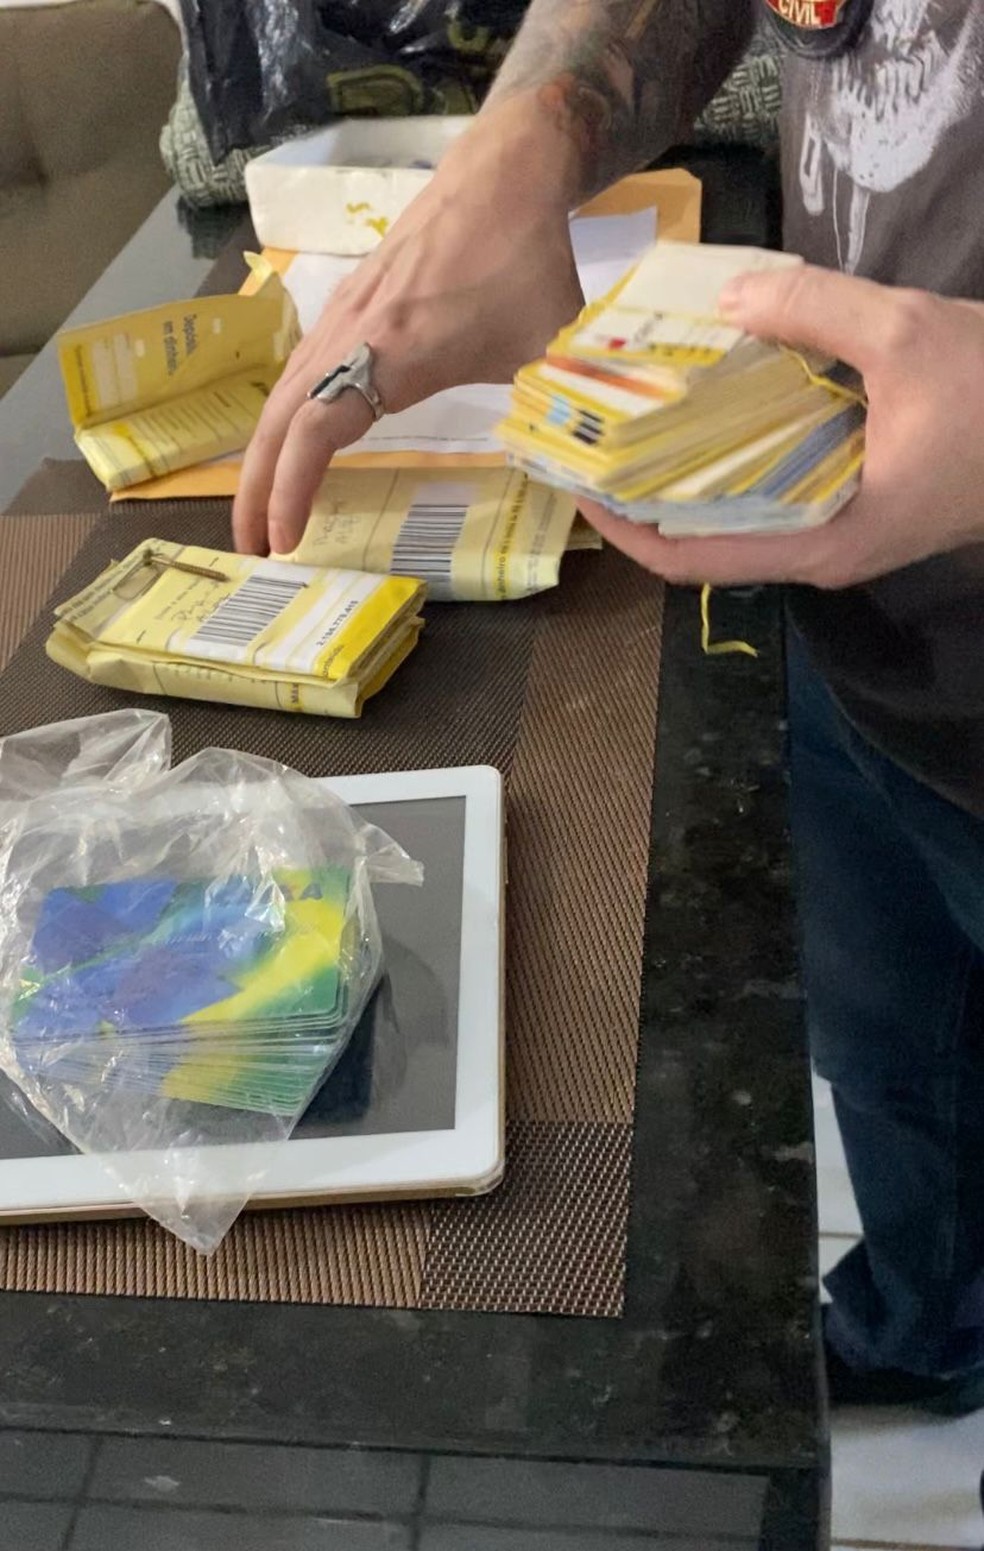 Policiais apreenderam ainda cerca de 150 cartões de benefícios assistenciais da Caixa Econômica Federal em nome de terceiros — Foto: Divulgação/Polícia Civil